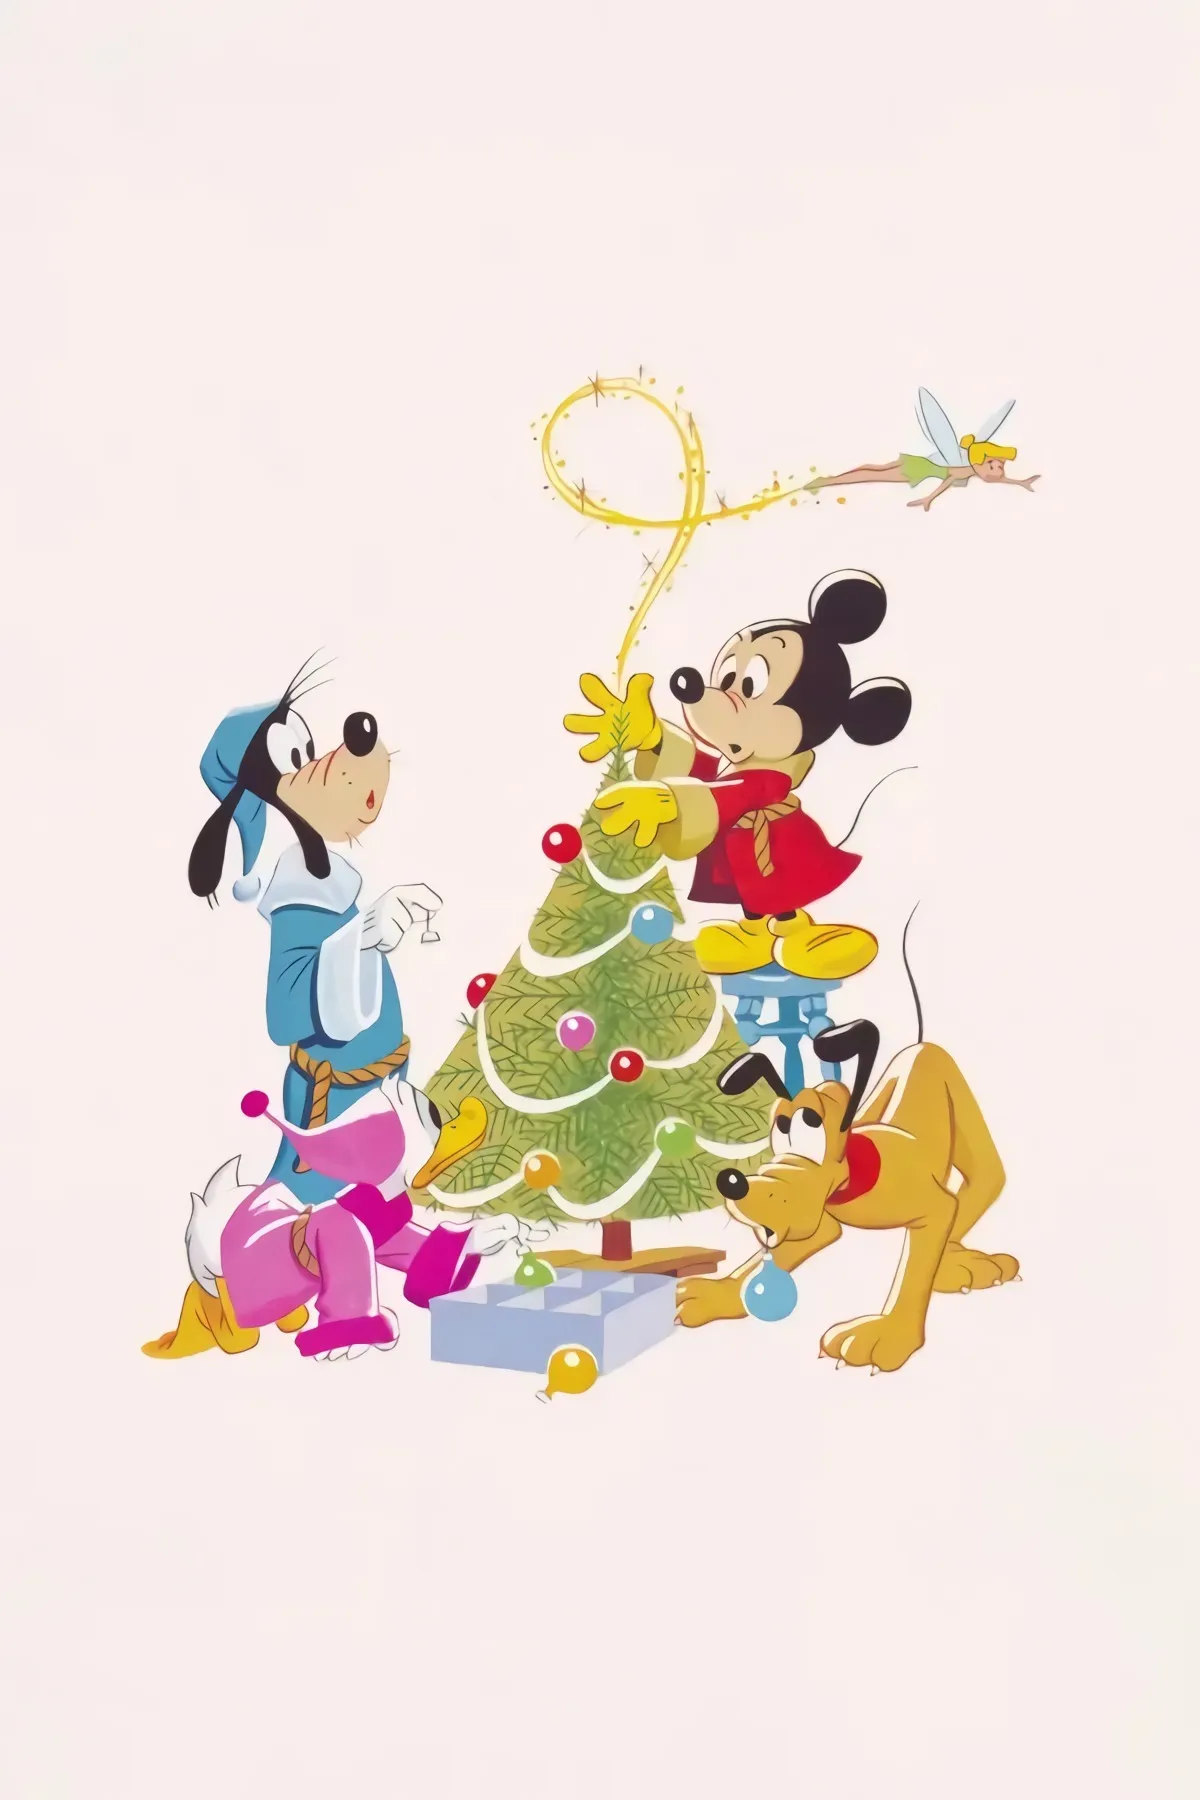 weihnachtskarte fuer kinder mit mickey mouse goofy und pluto